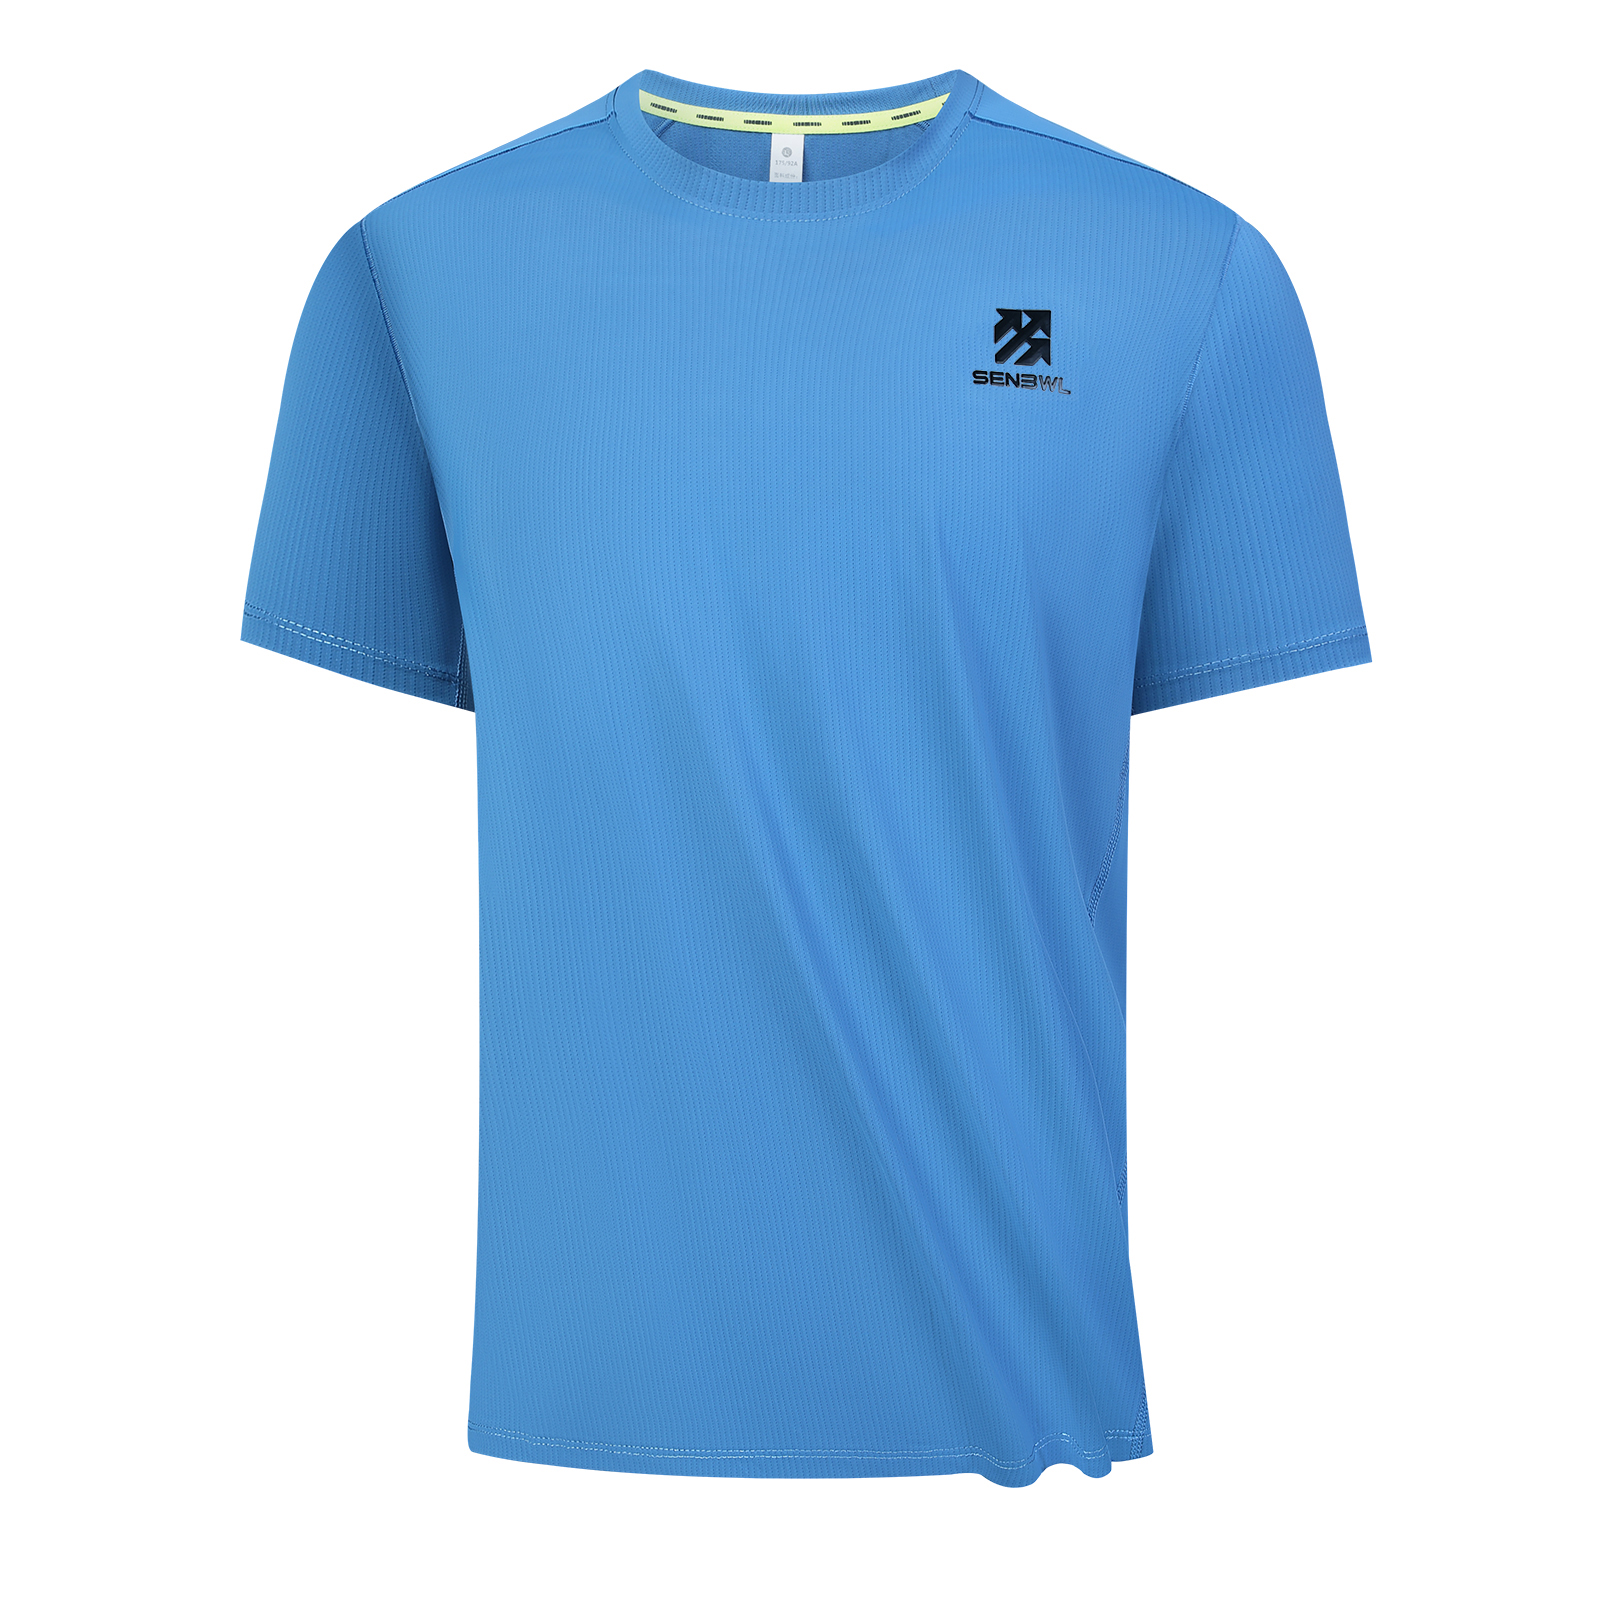 Senbwl Men's 5A Antimicrobial Sports T-shirt-Senbwl Sports